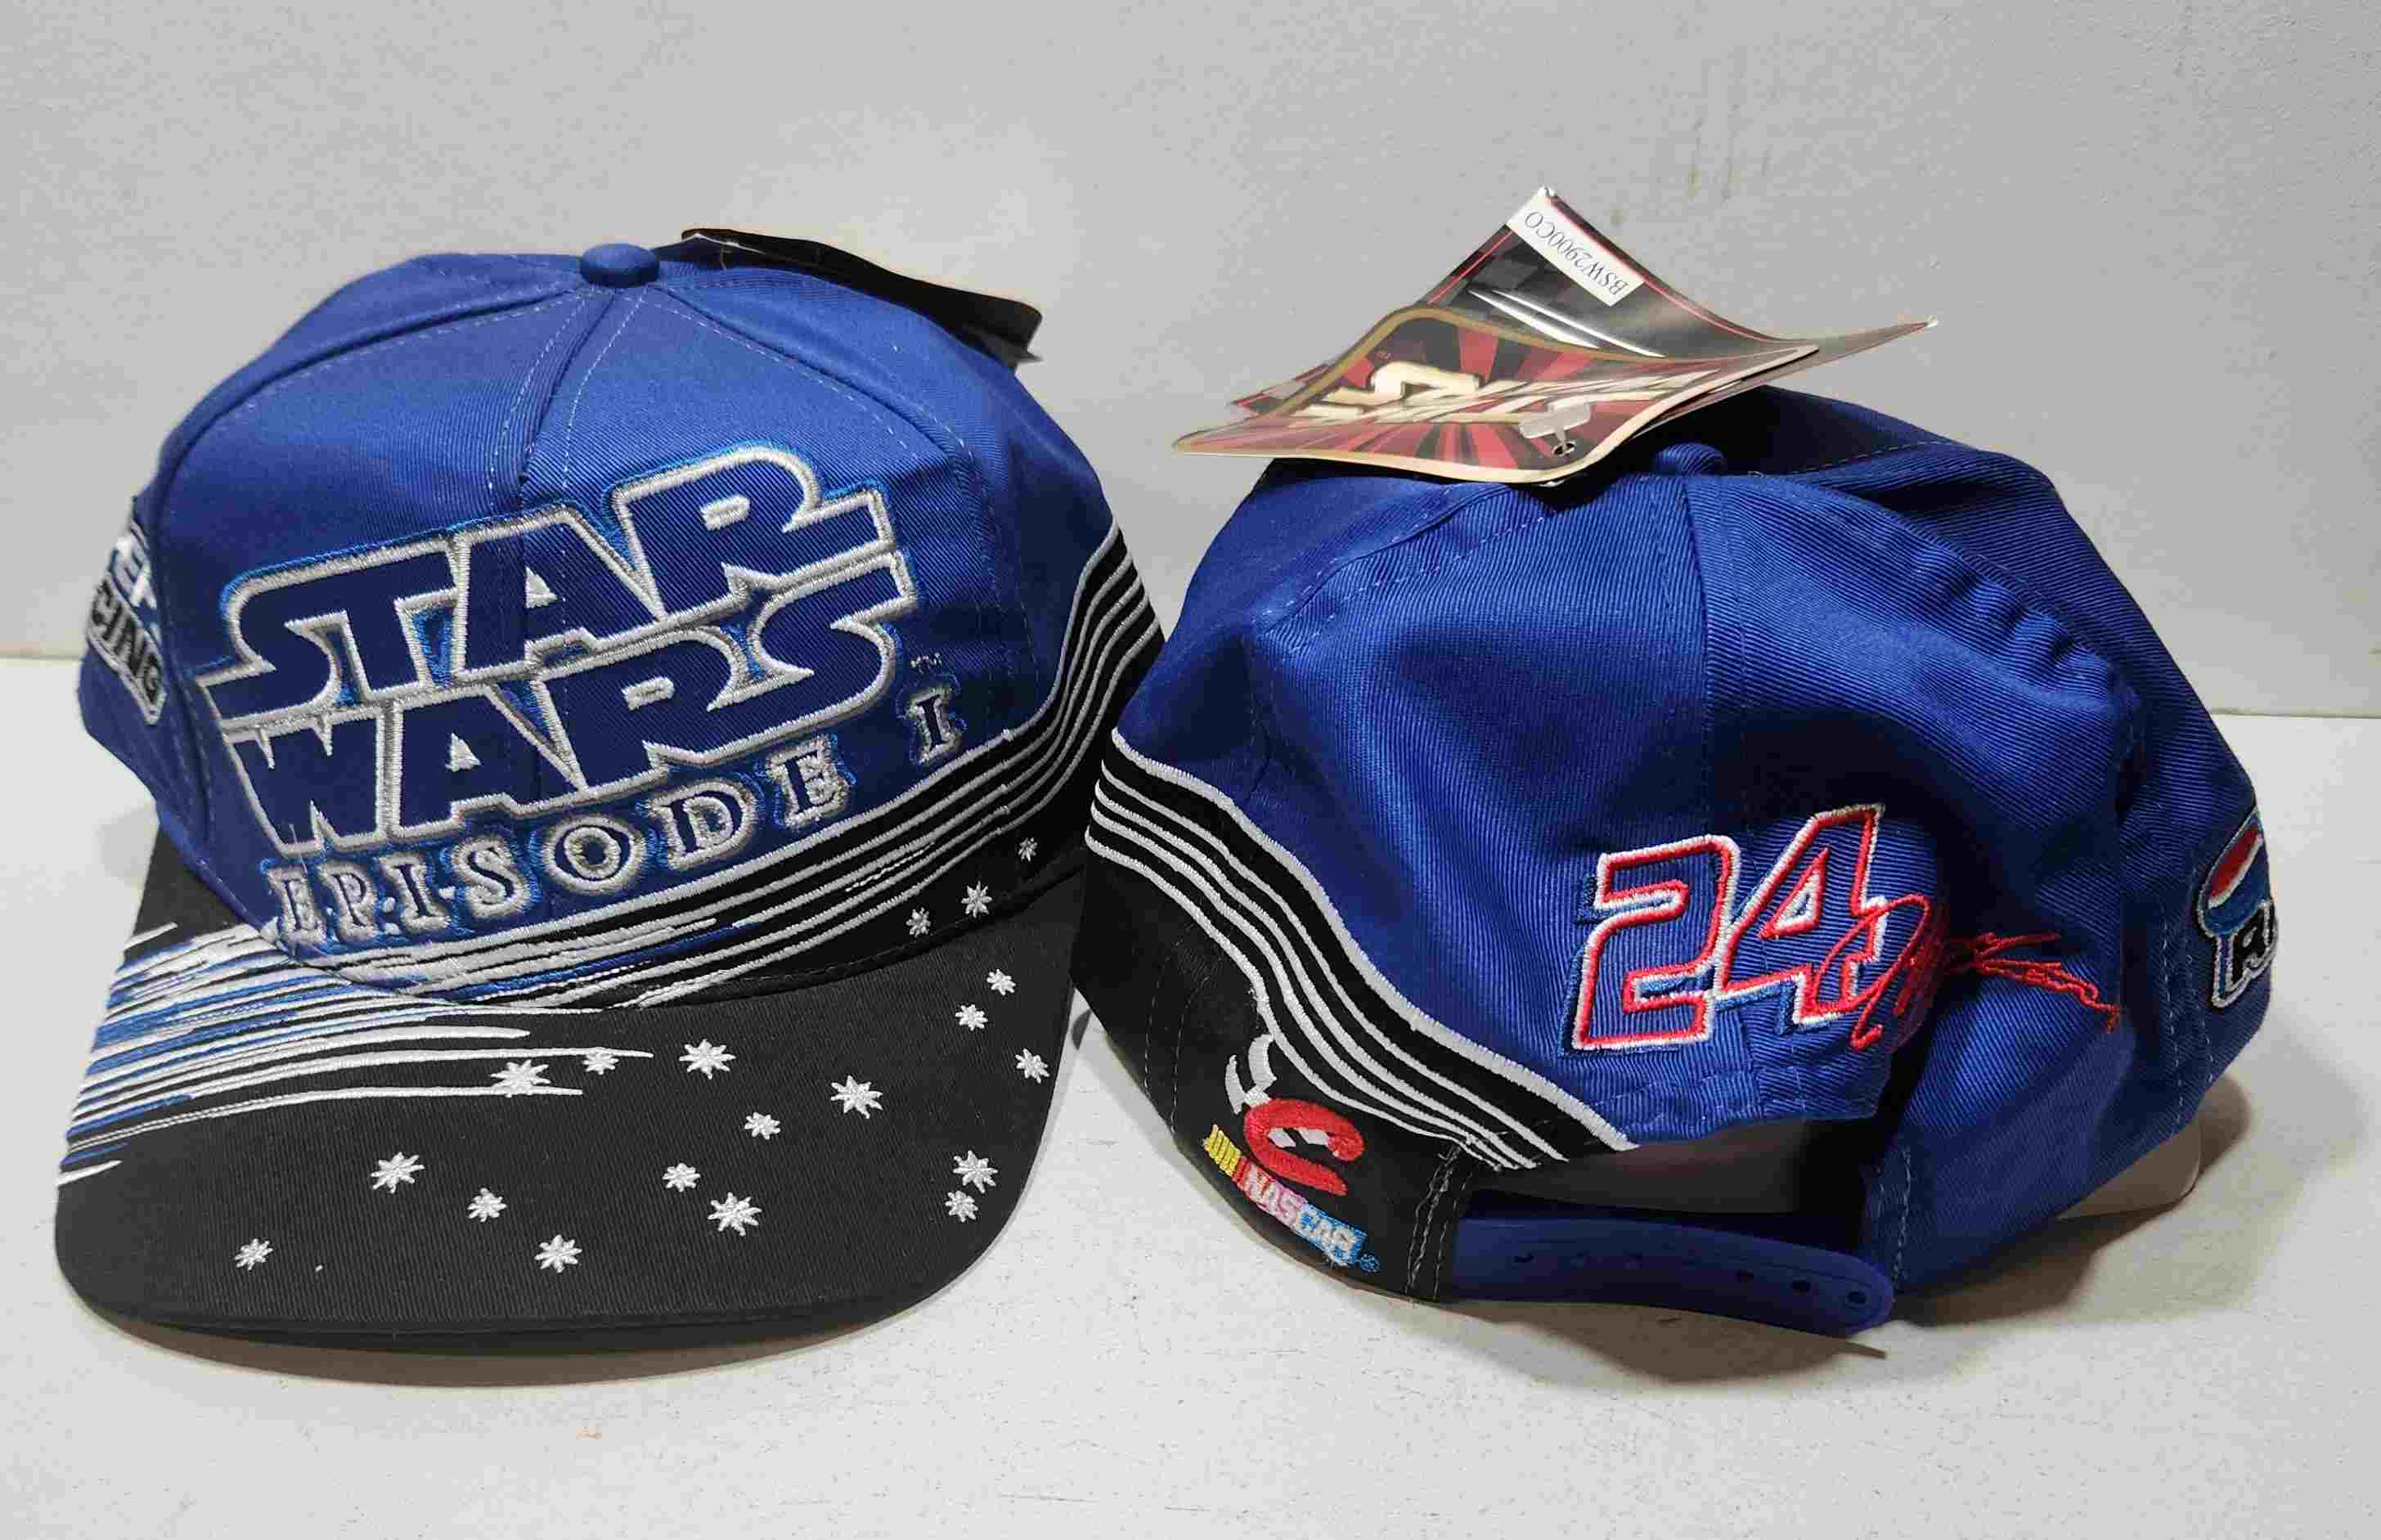 1999 Jeff Gordon Pepsi "Star Wars" "Busch Series" cap